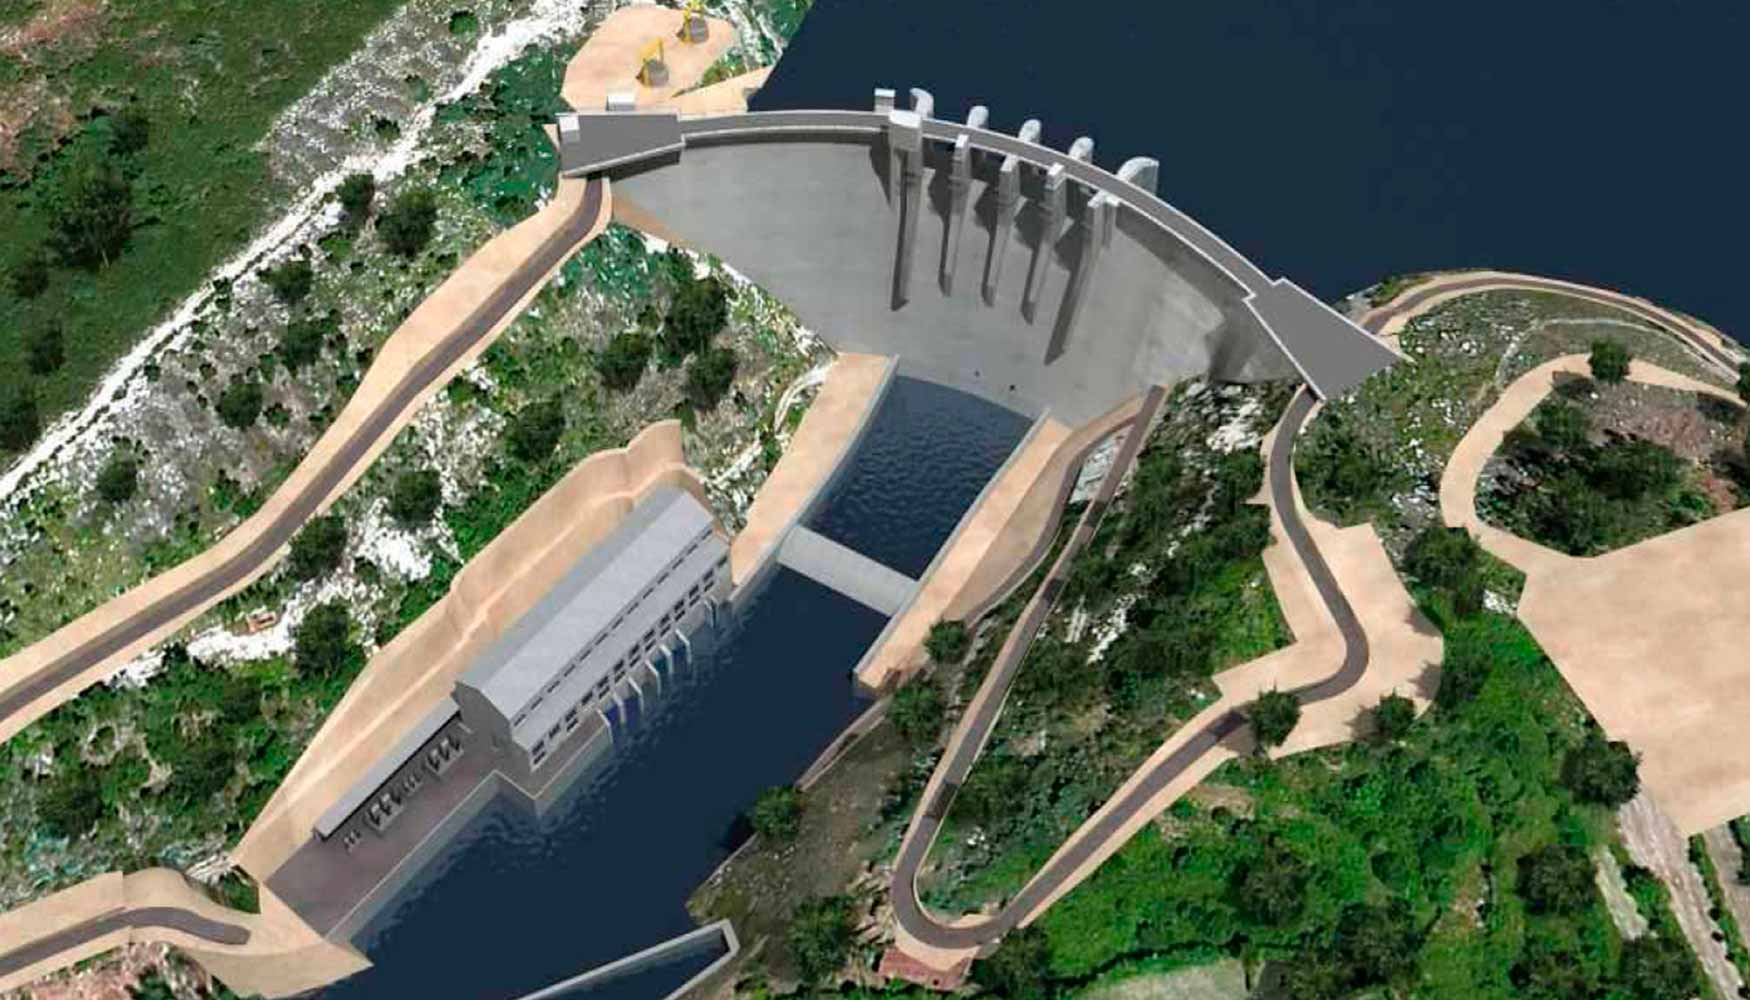 Infografa de la central hidroelctrica Daivoes, Portugal